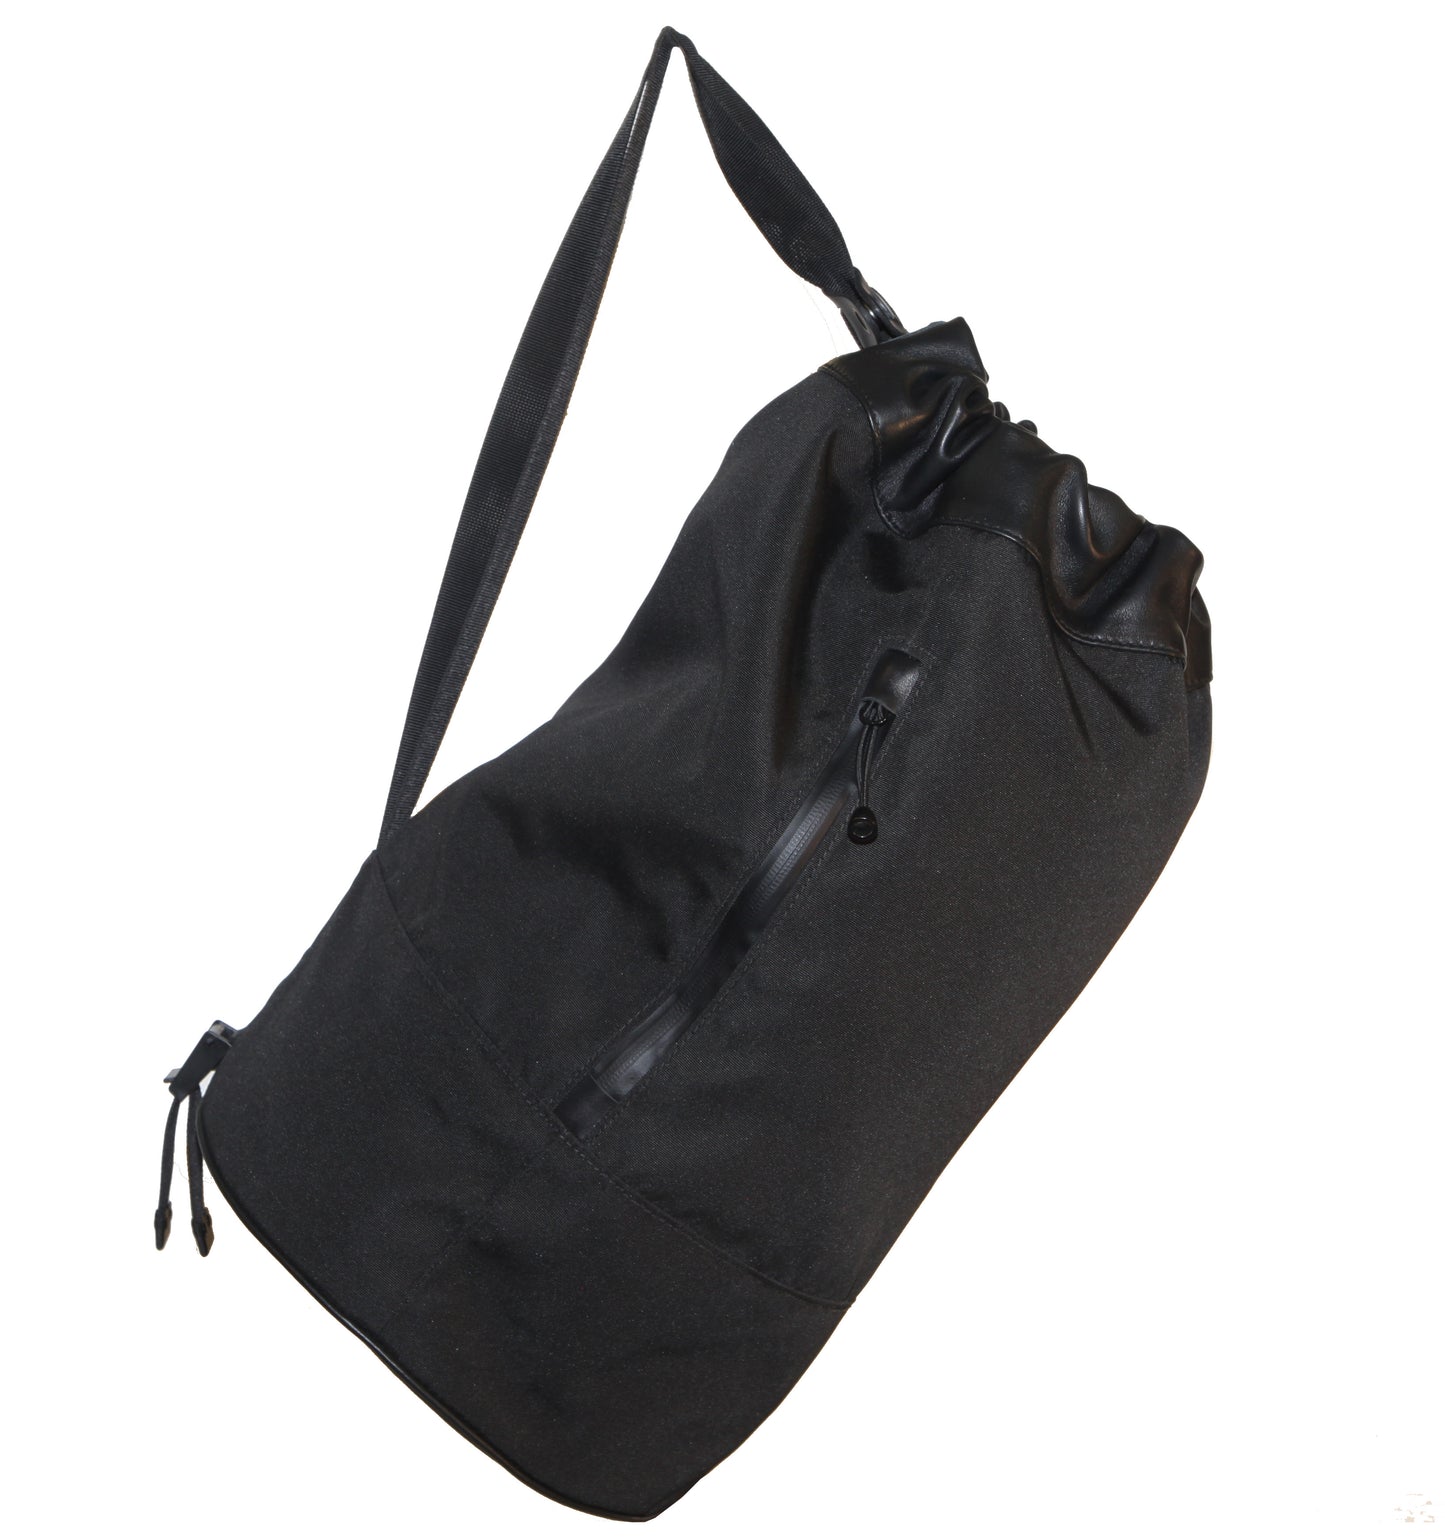 Roe Duffle Bag - Nylon